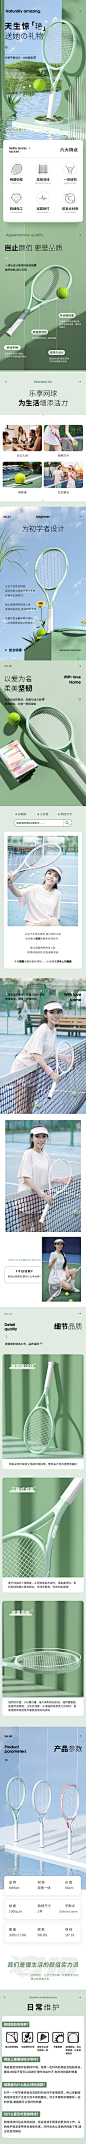 网球拍训练套装